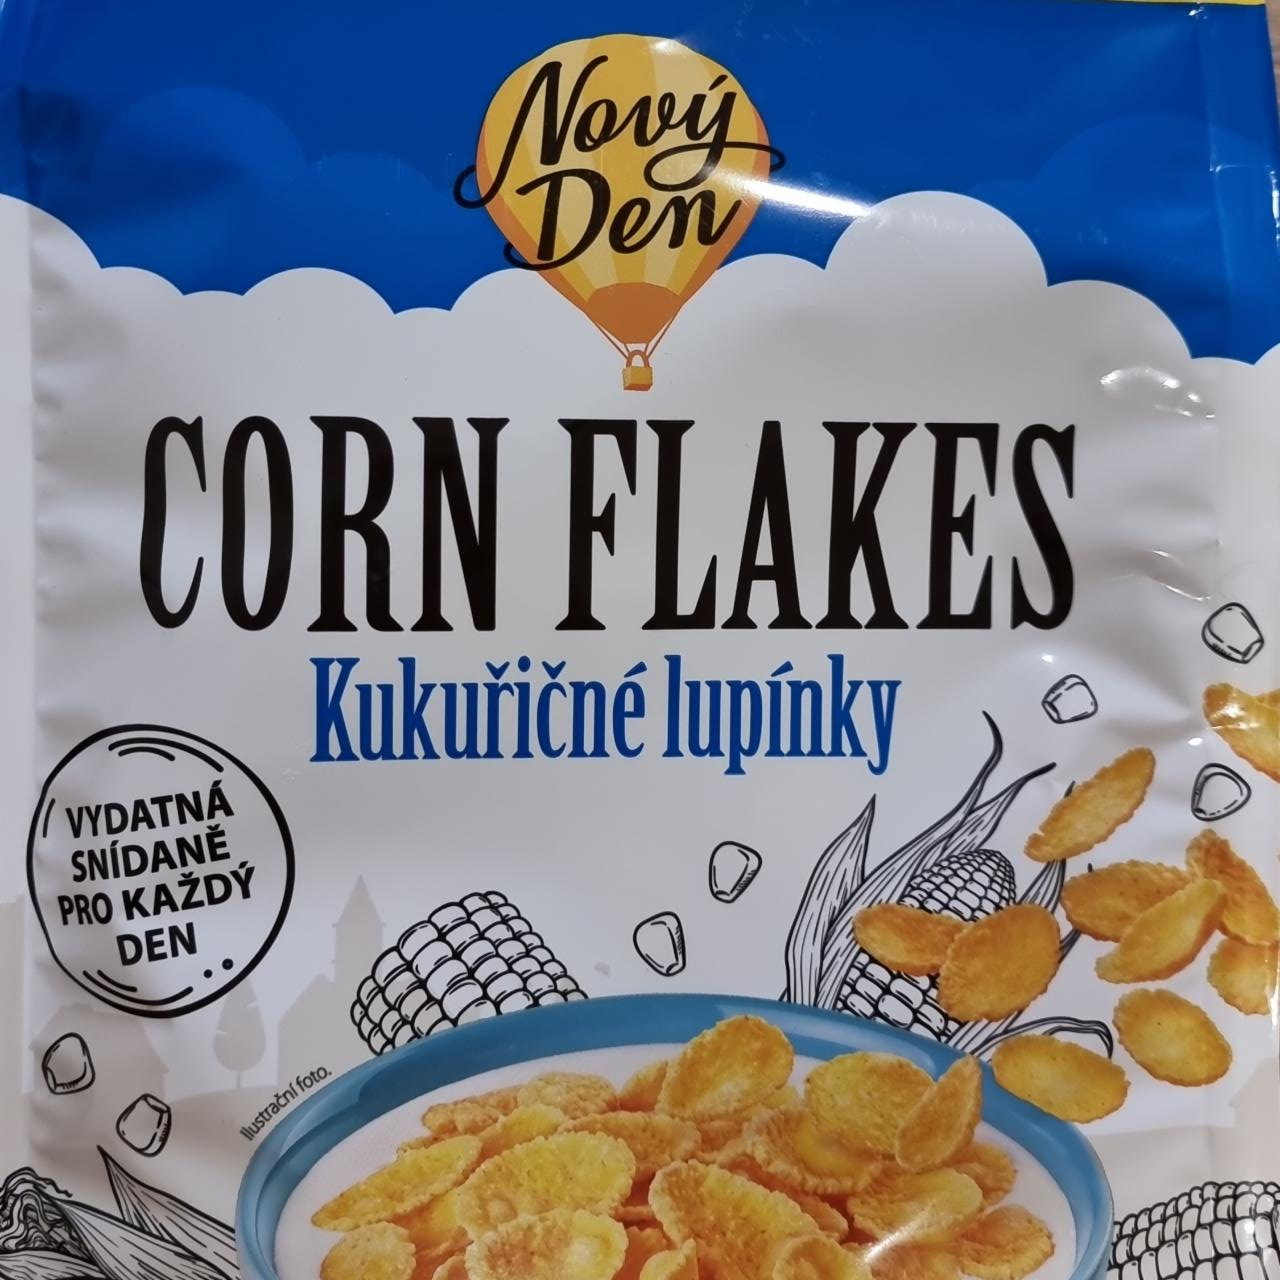 Fotografie - Corn flakes kukuřičné lupínky Nový Den